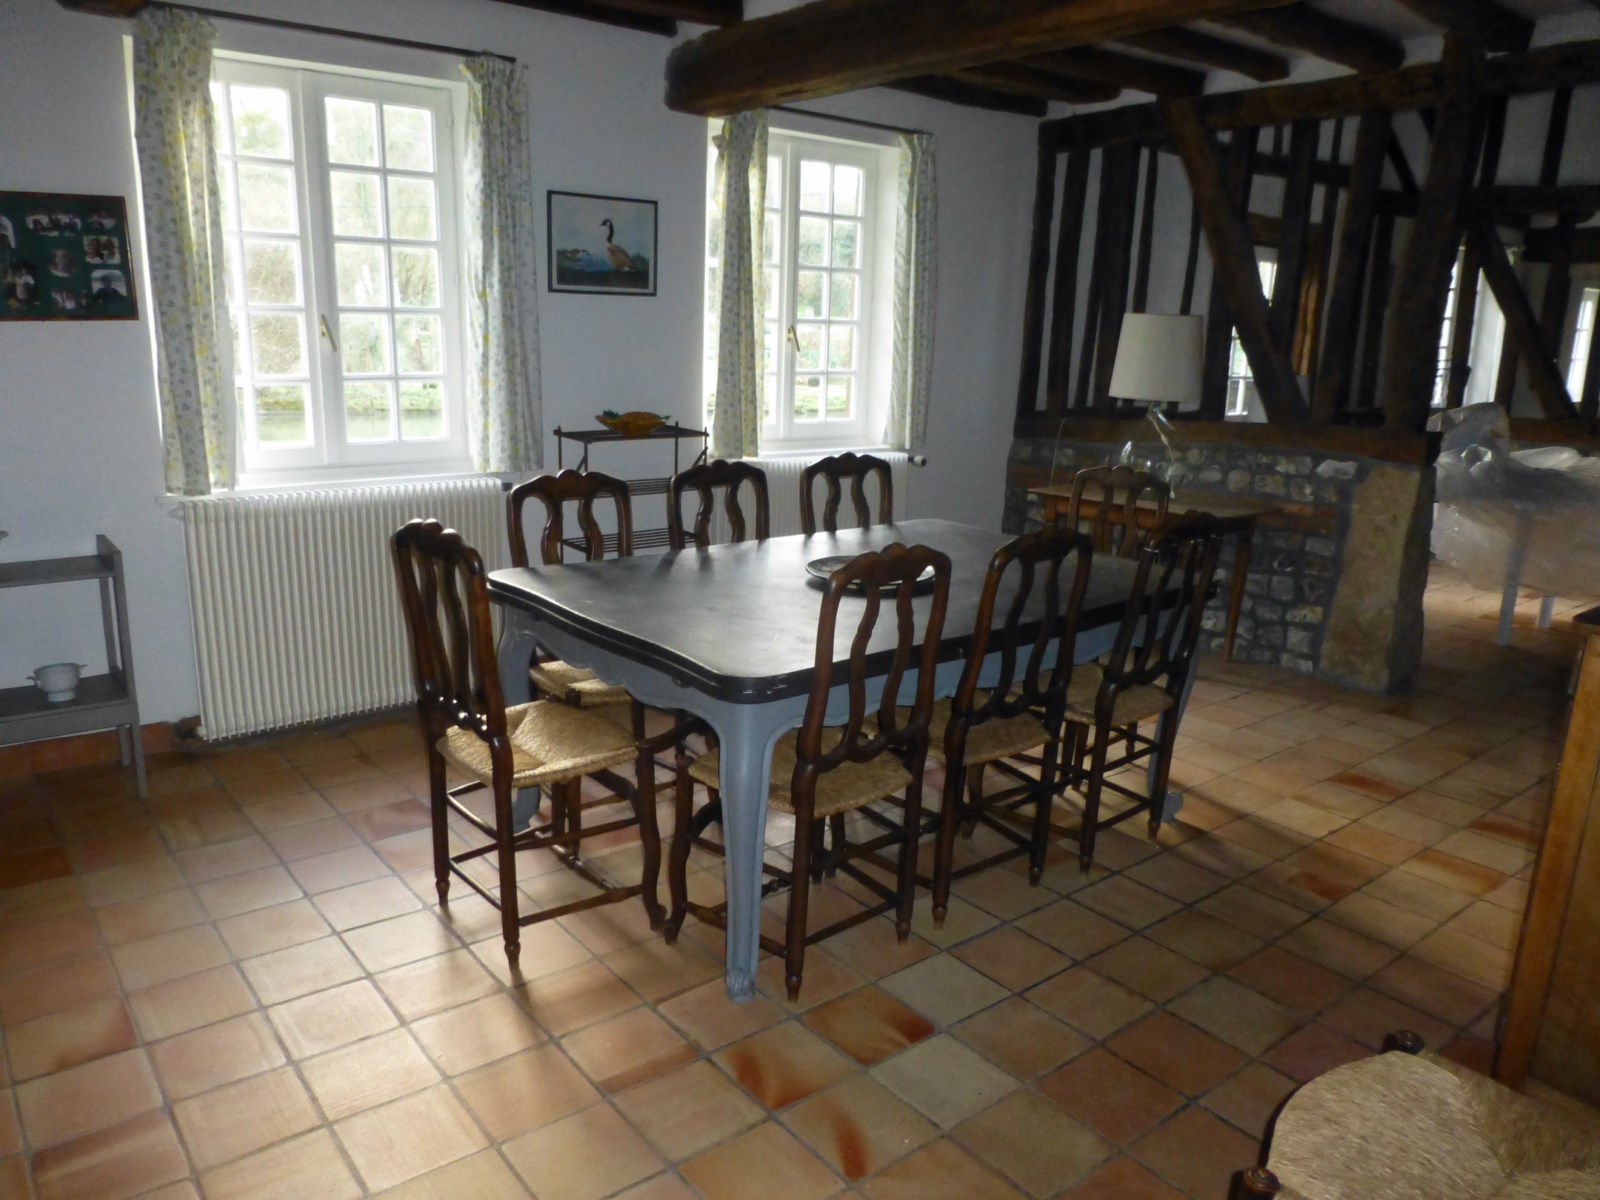 Salle à manger d'une maison normande en colombages a vendre proche cote d'albatre